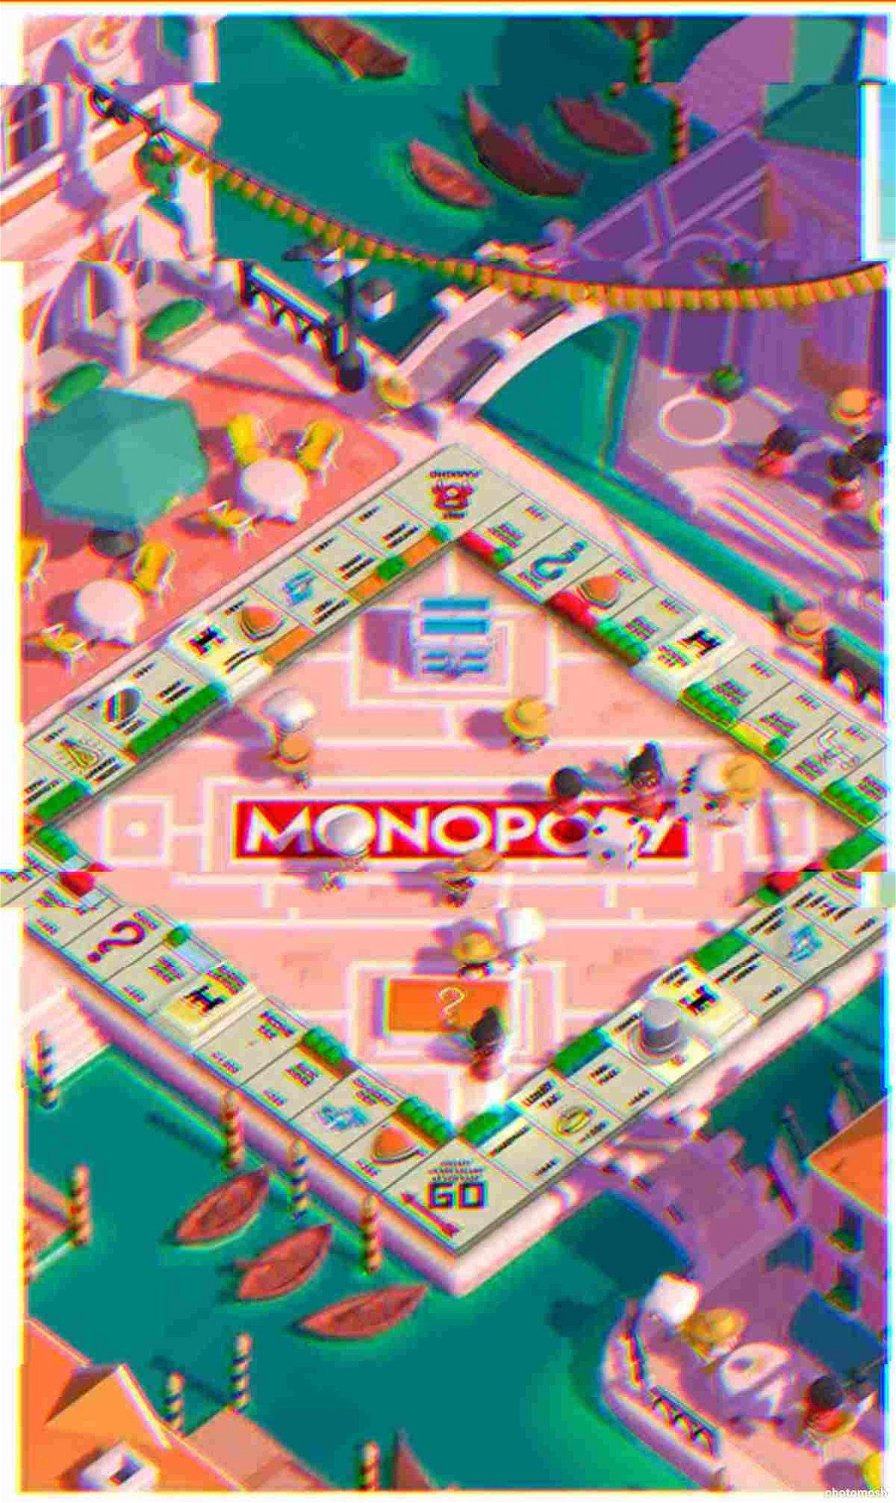 Monopoly Go glitch modalità aereo